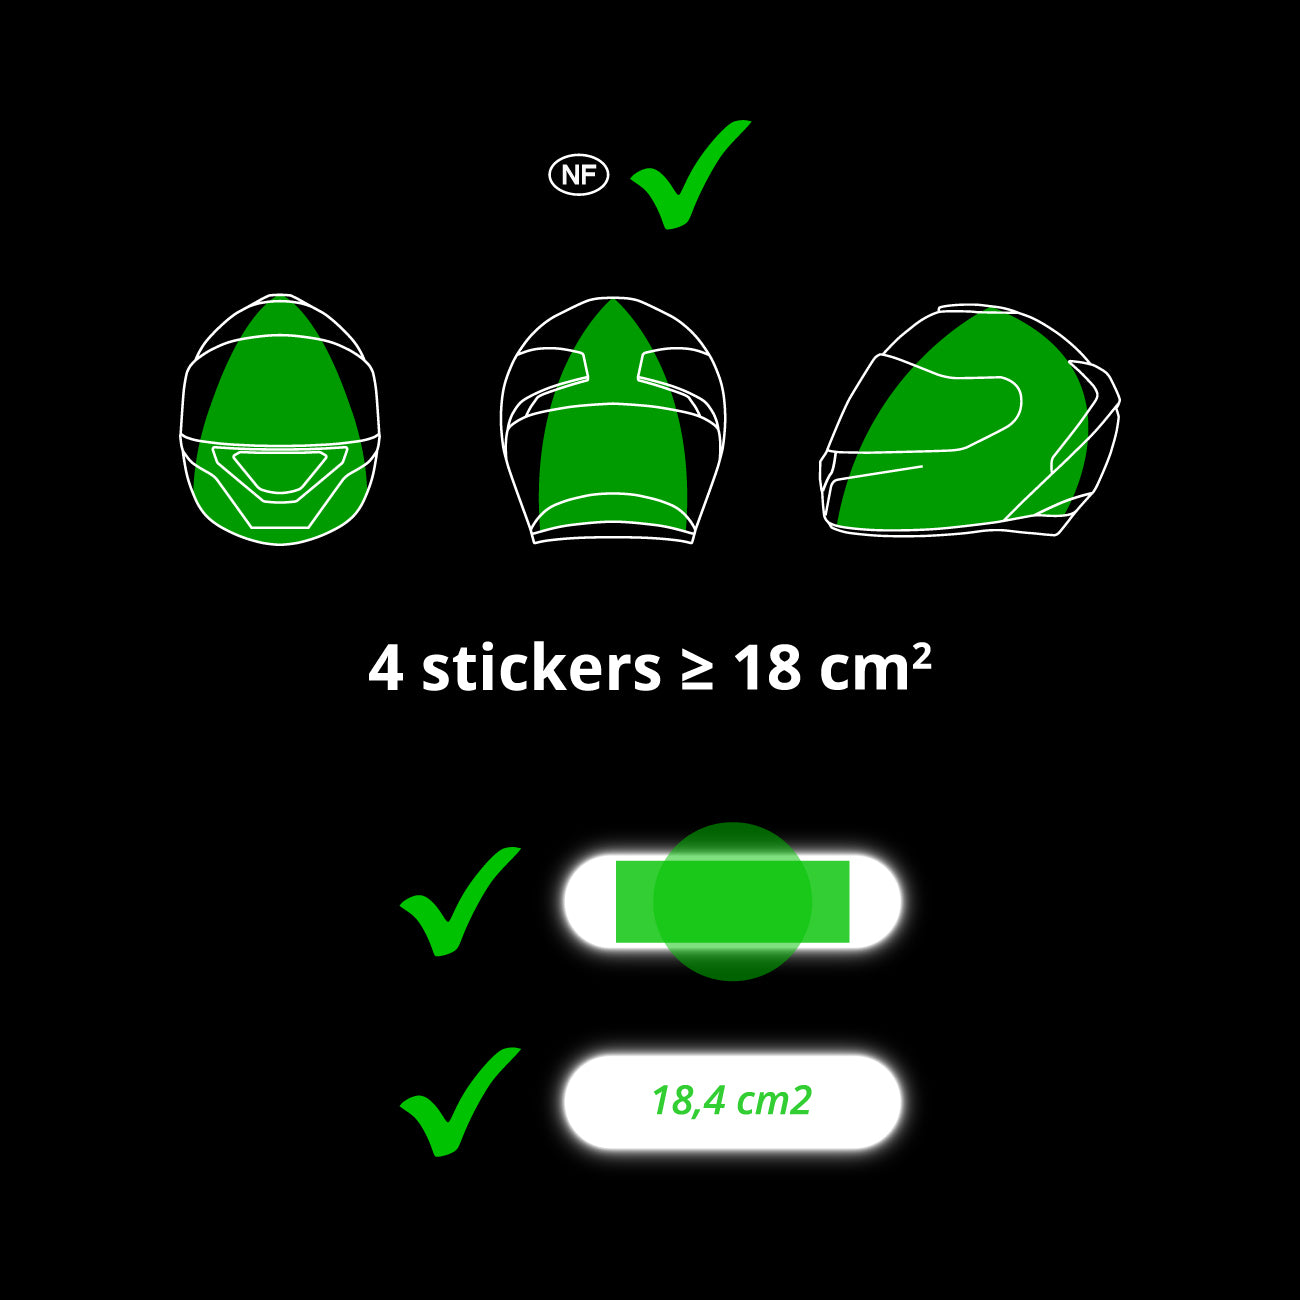 VINGVO Stickers réfléchissants pour casque moto lumière LED